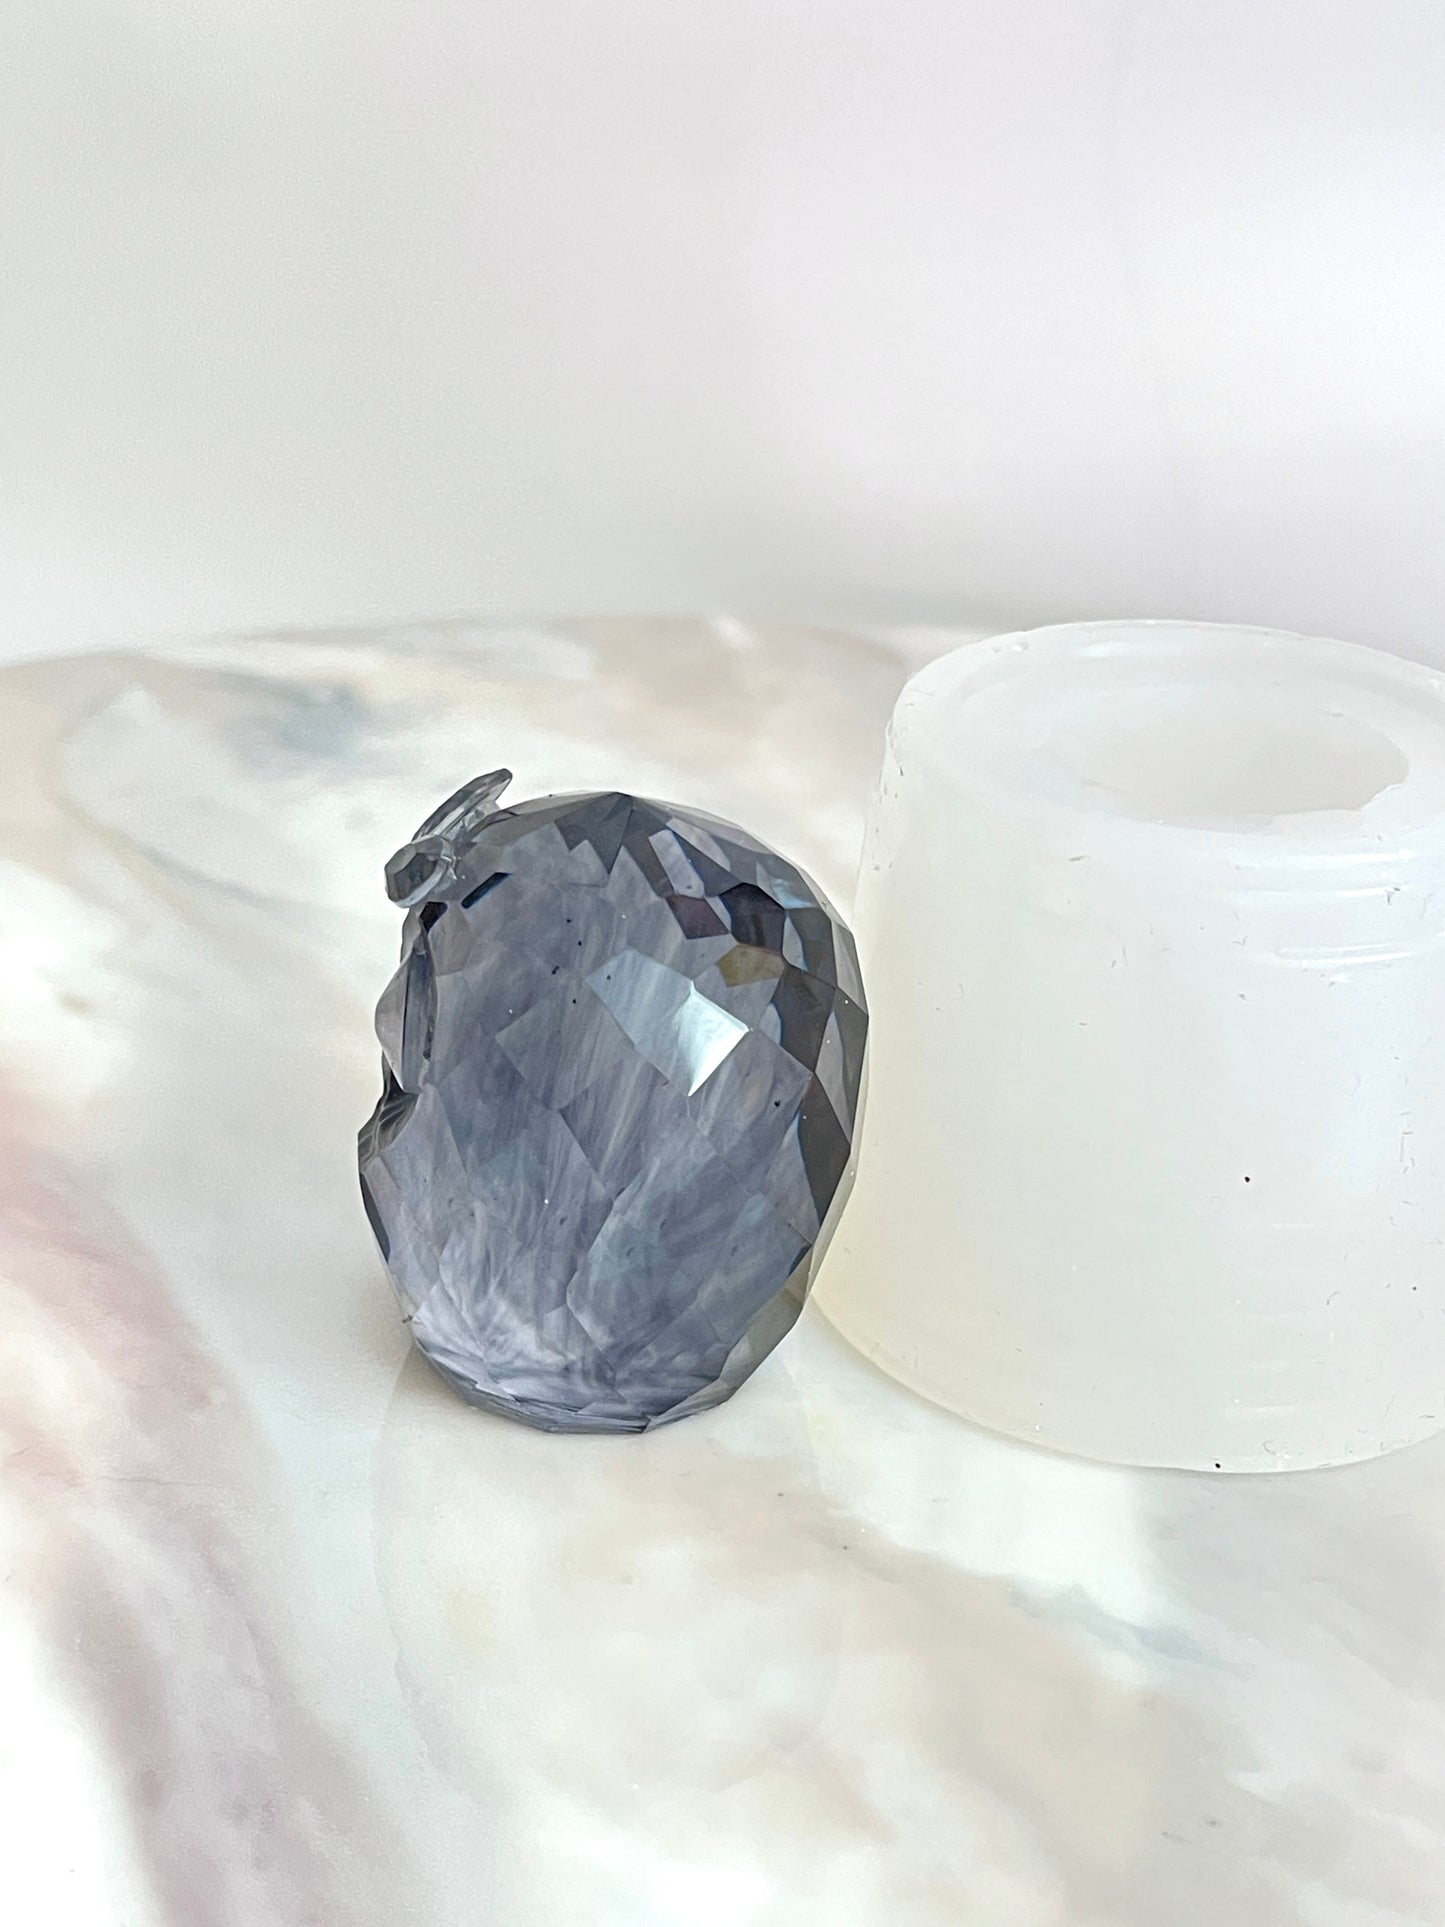 Erstellen Sie mit unserer Silikonform atemberaubende Kristall-Eulen-Designs